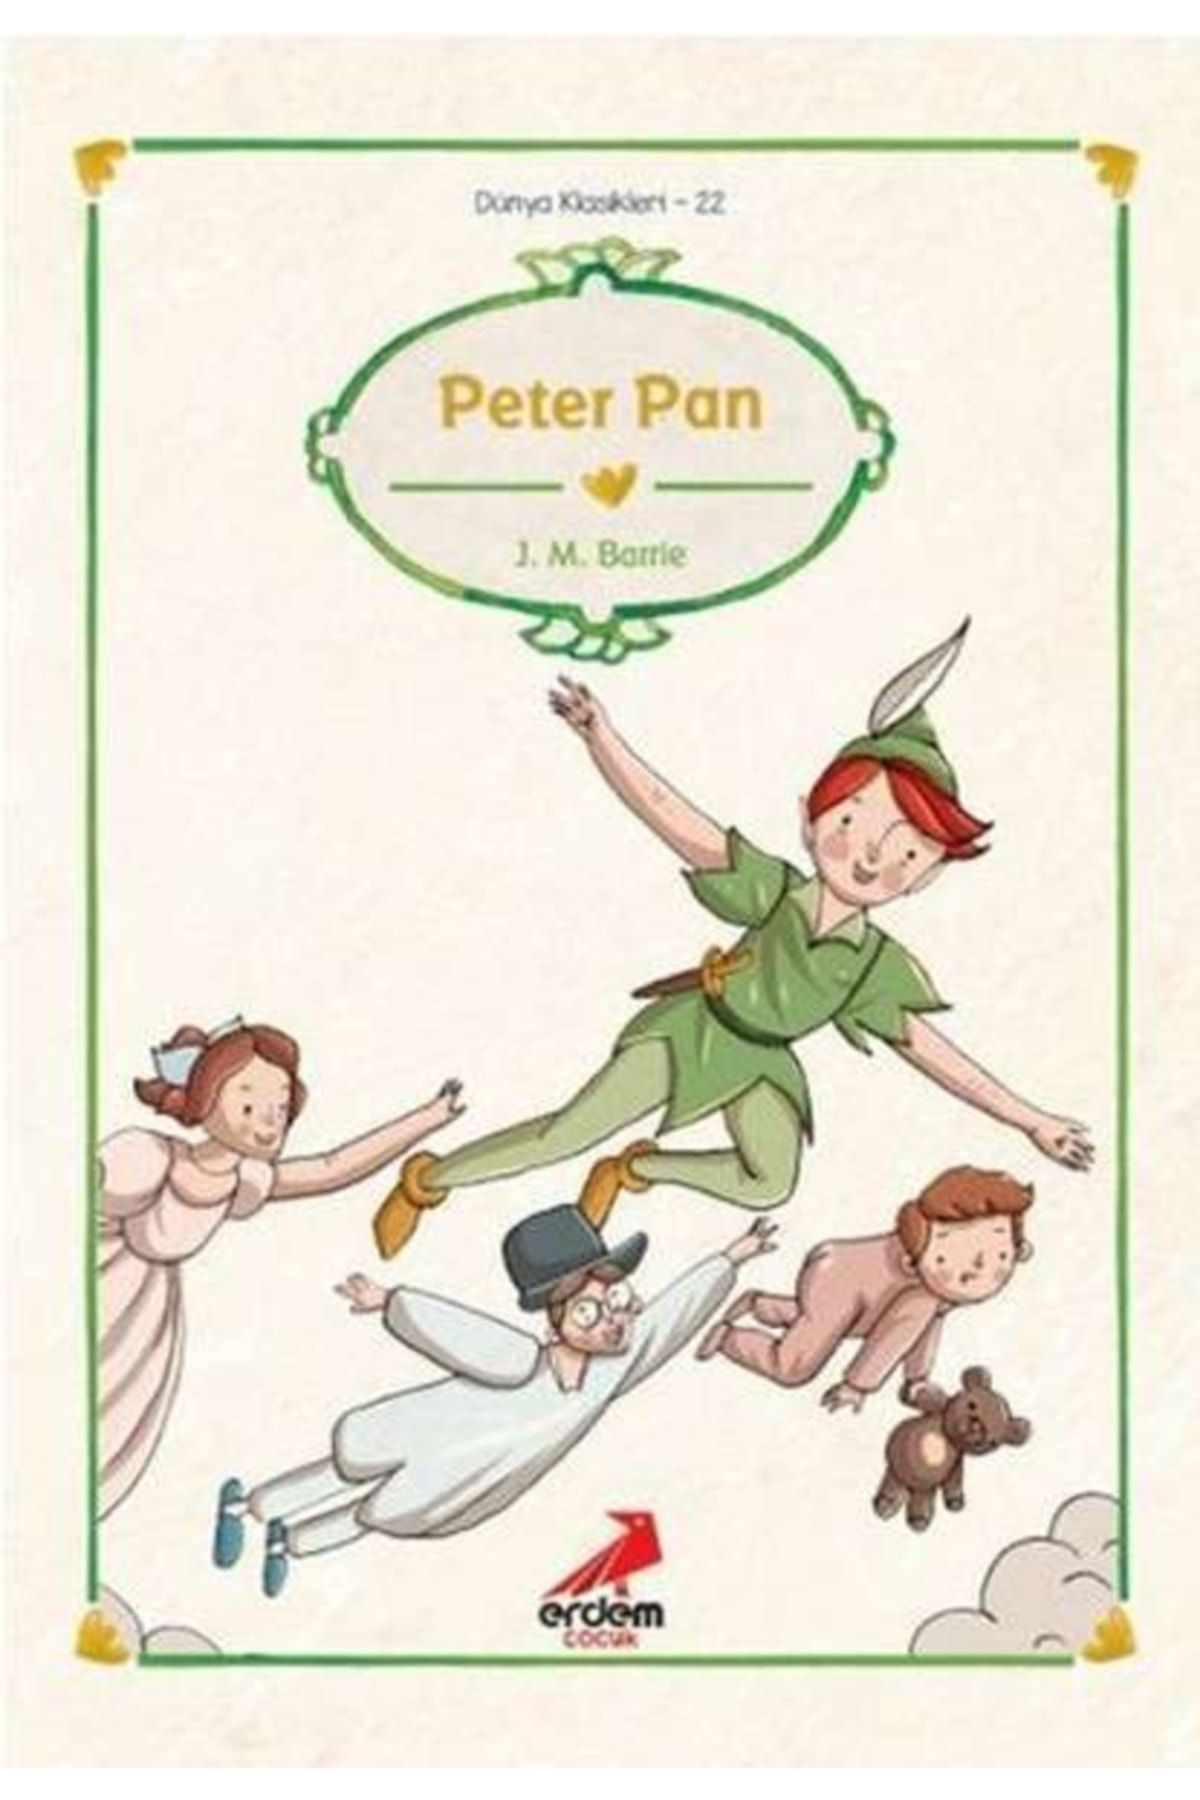 Erdem Yayınları Dünya Çocuk Klasikleri - Peter Pan - J. M. Barrie